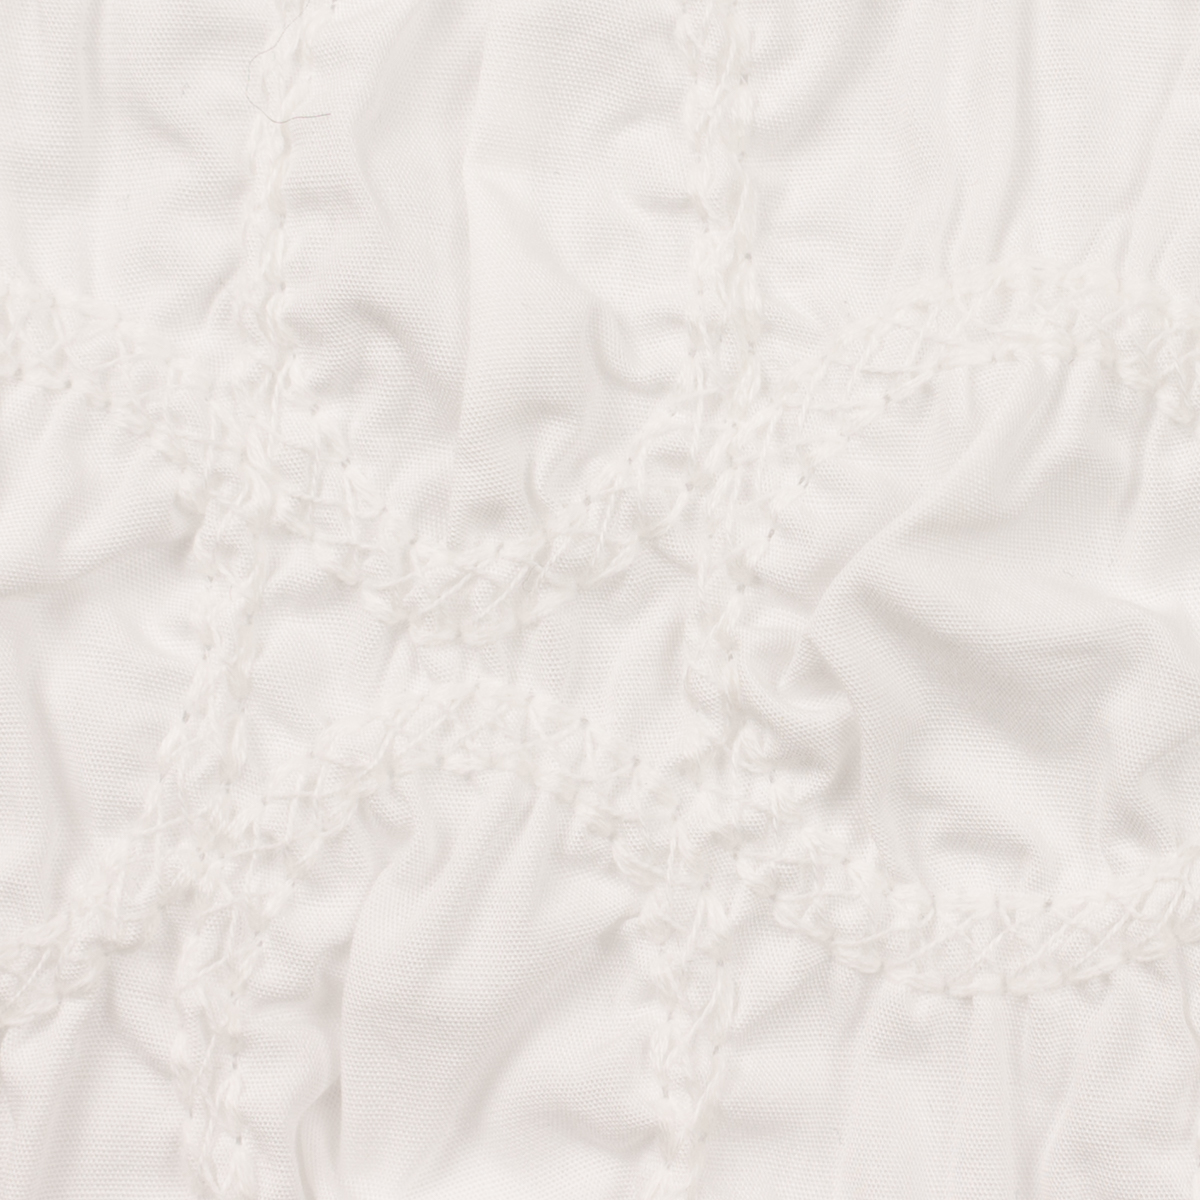 【アウトレット】コットン×サークル(オフホワイト)×ブロードシャーリング刺繍のサムネイル